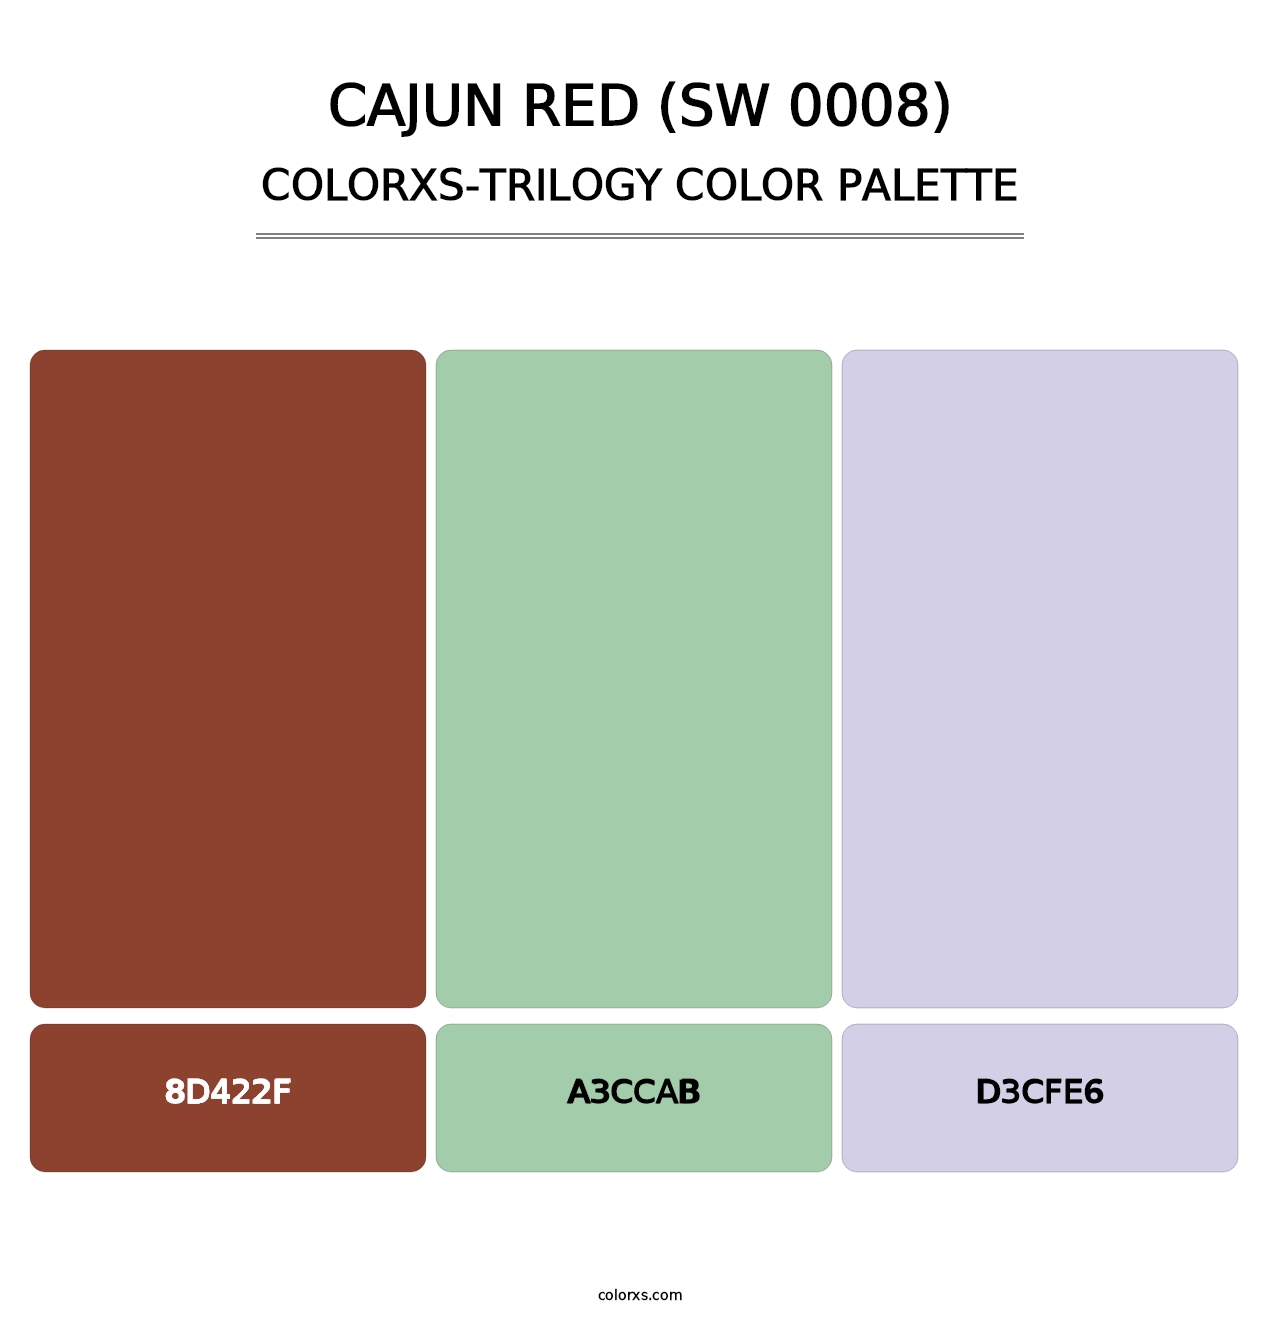 Cajun Red (SW 0008) - Colorxs Trilogy Palette